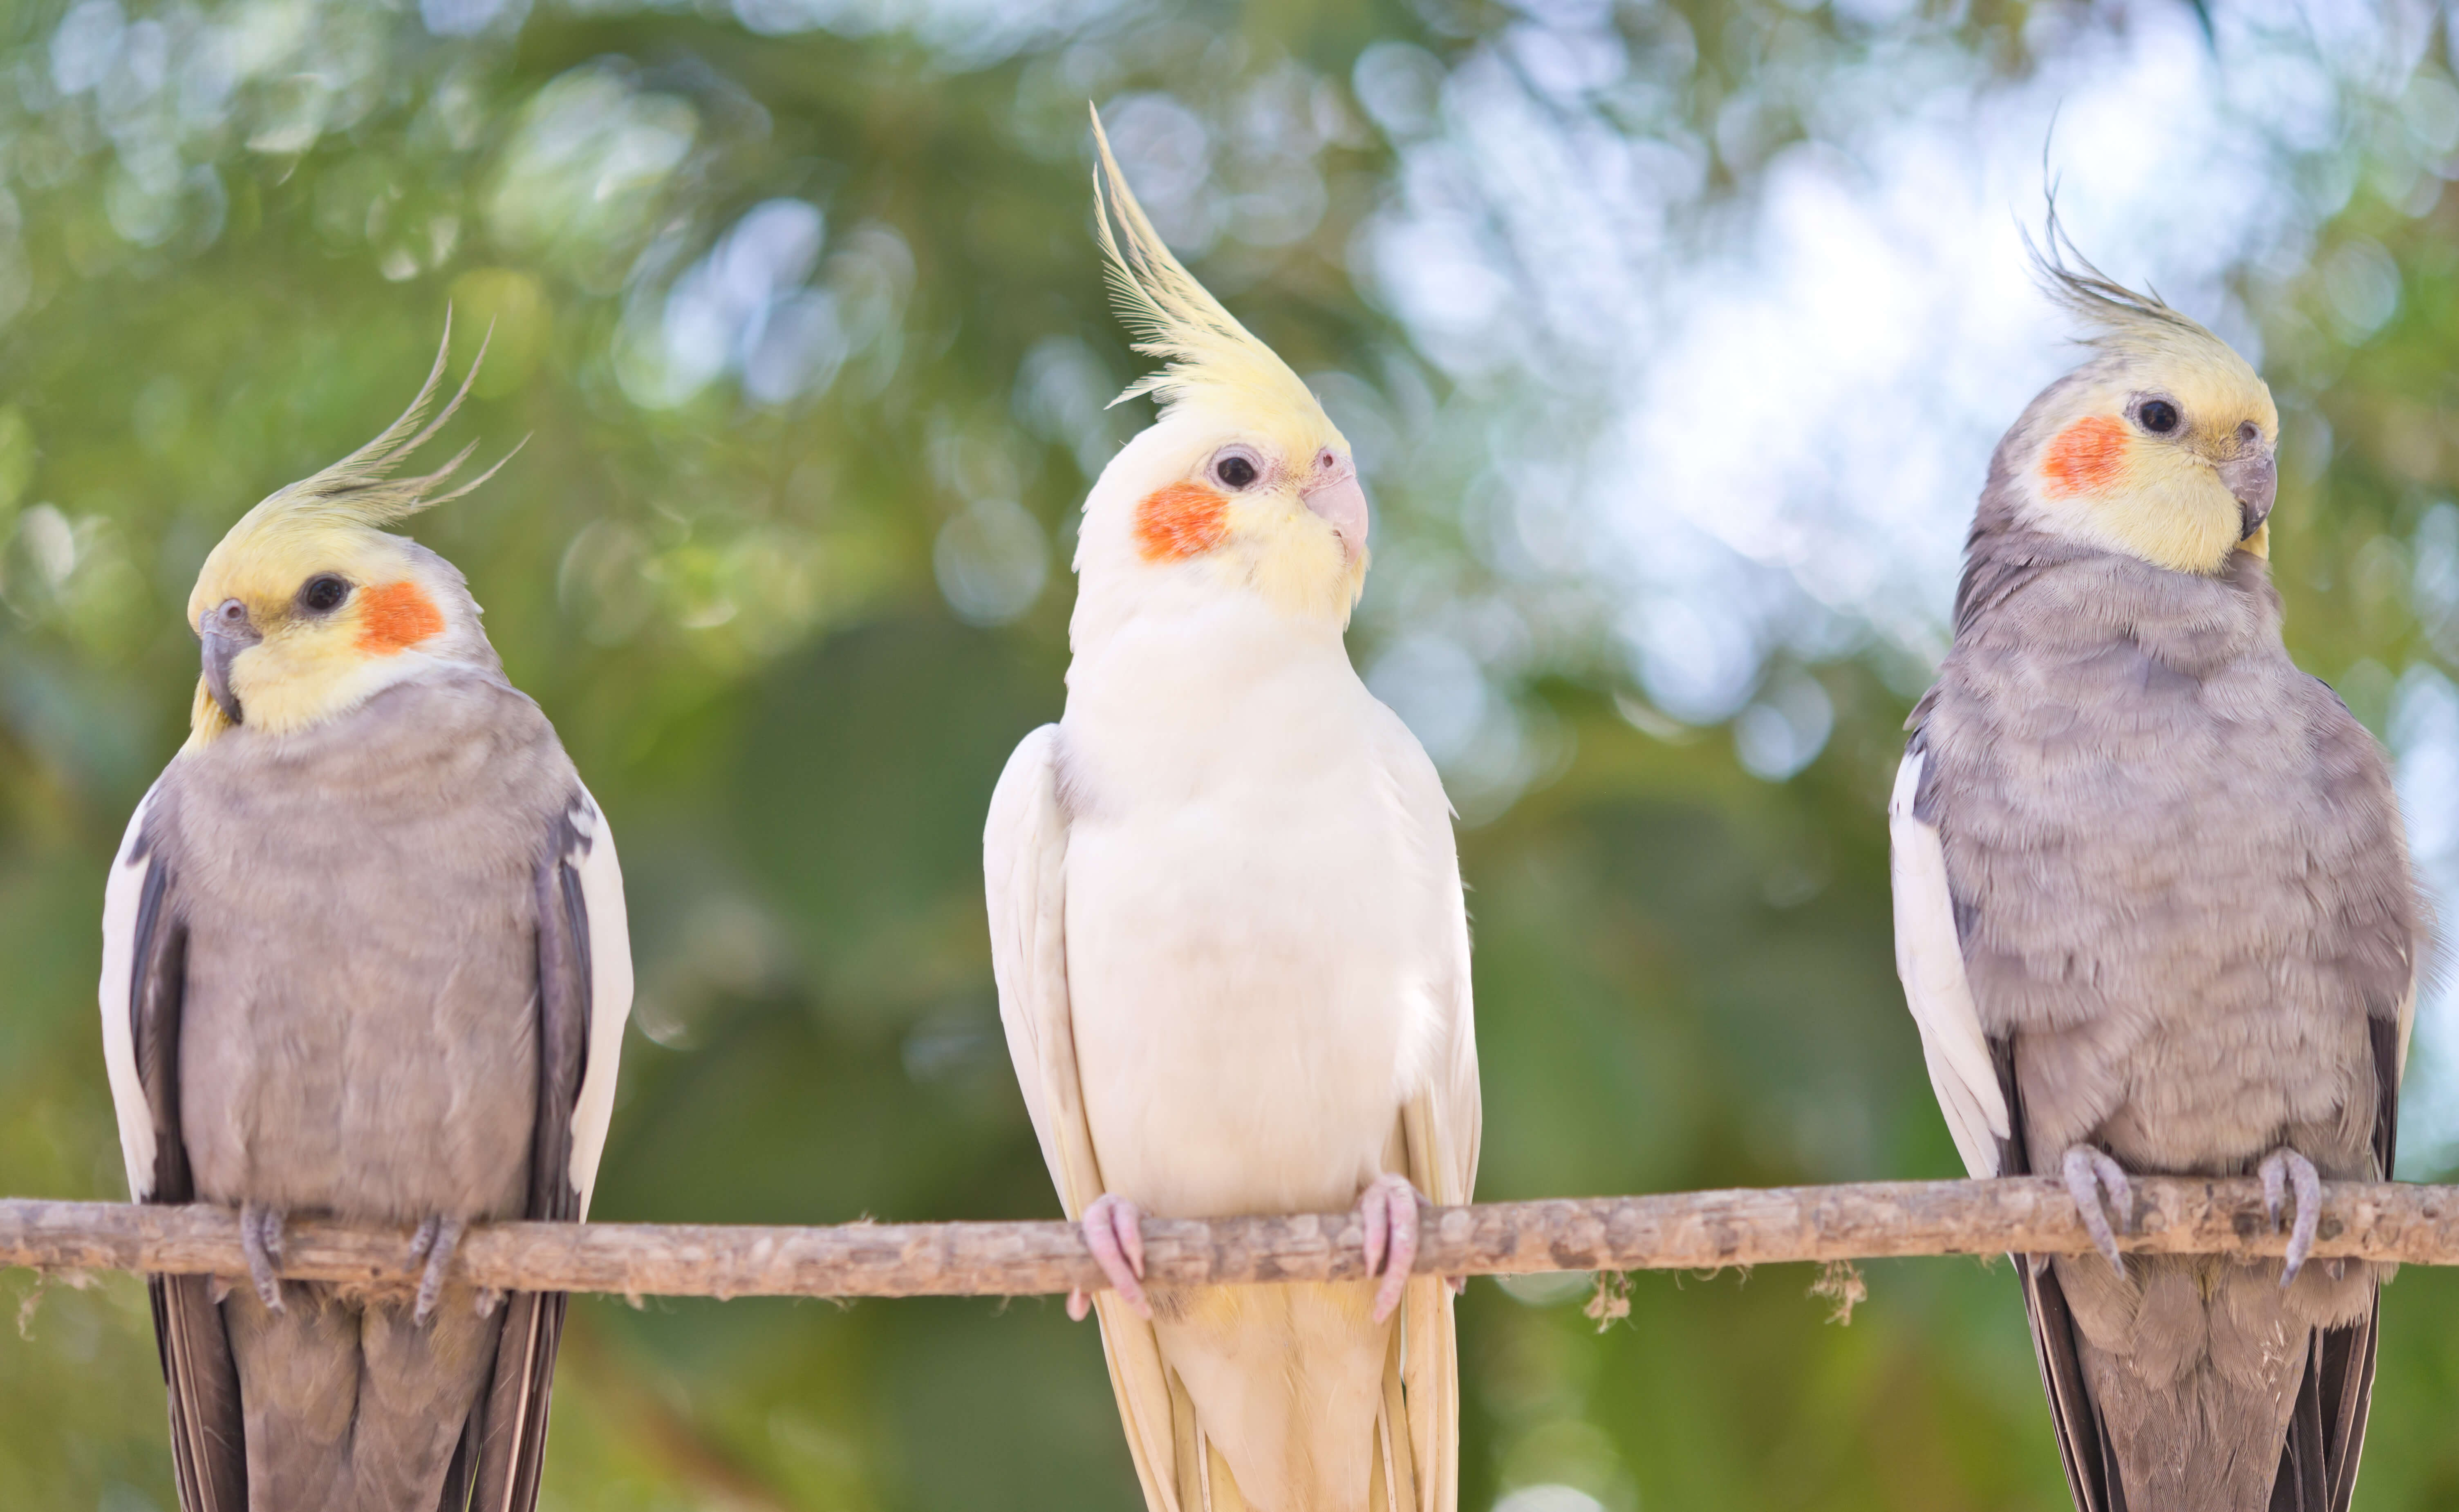 Papuga nimfa - podstawowe wskazówki dotyczące żywienia i pielęgnacji